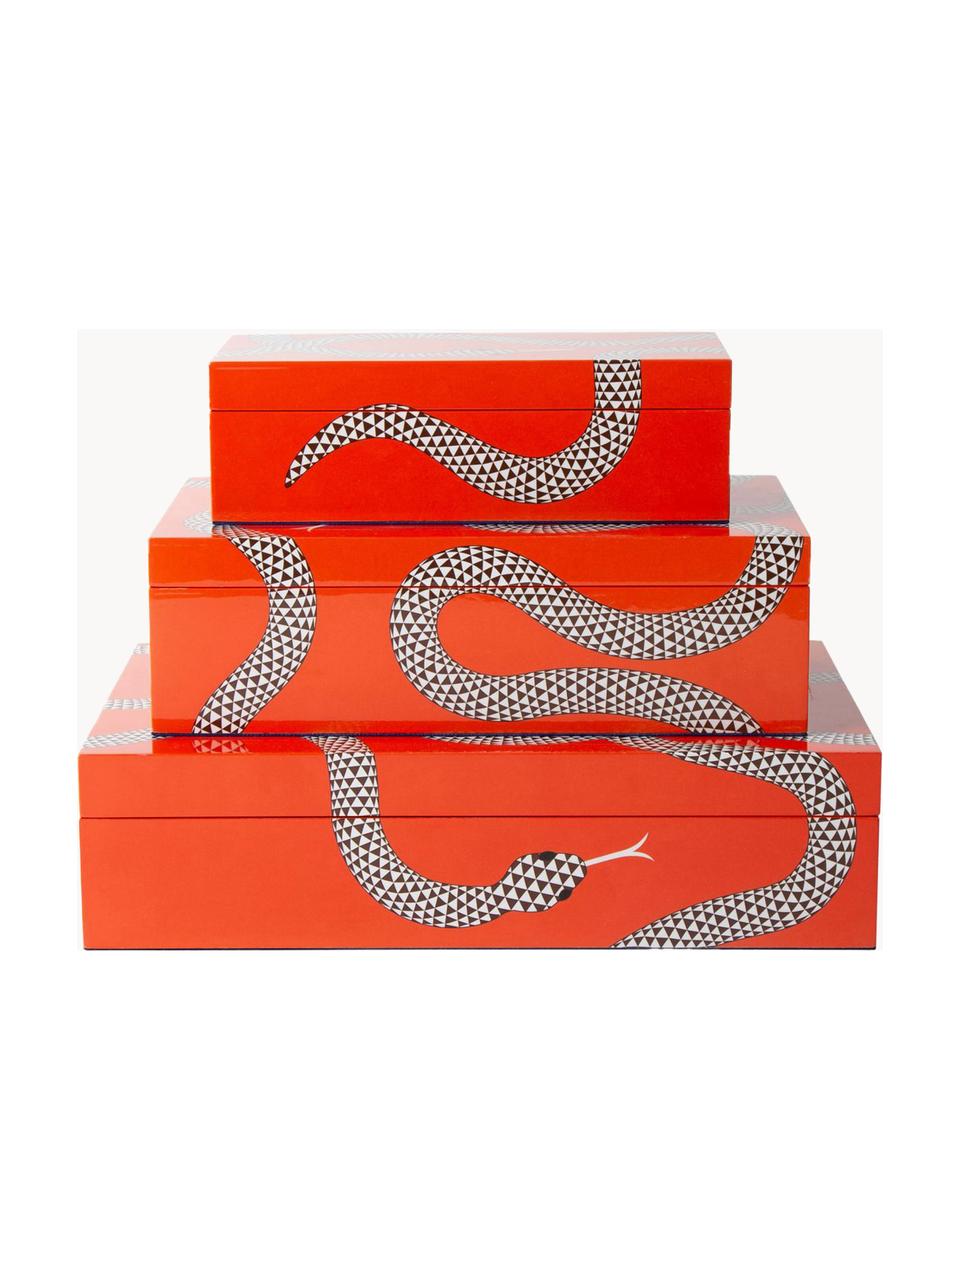 Ręcznie wykonane pudełko do przechowywania Eden, Drewno lakierowane, Pomarańczowy, biały, S 25 x G 15 cm